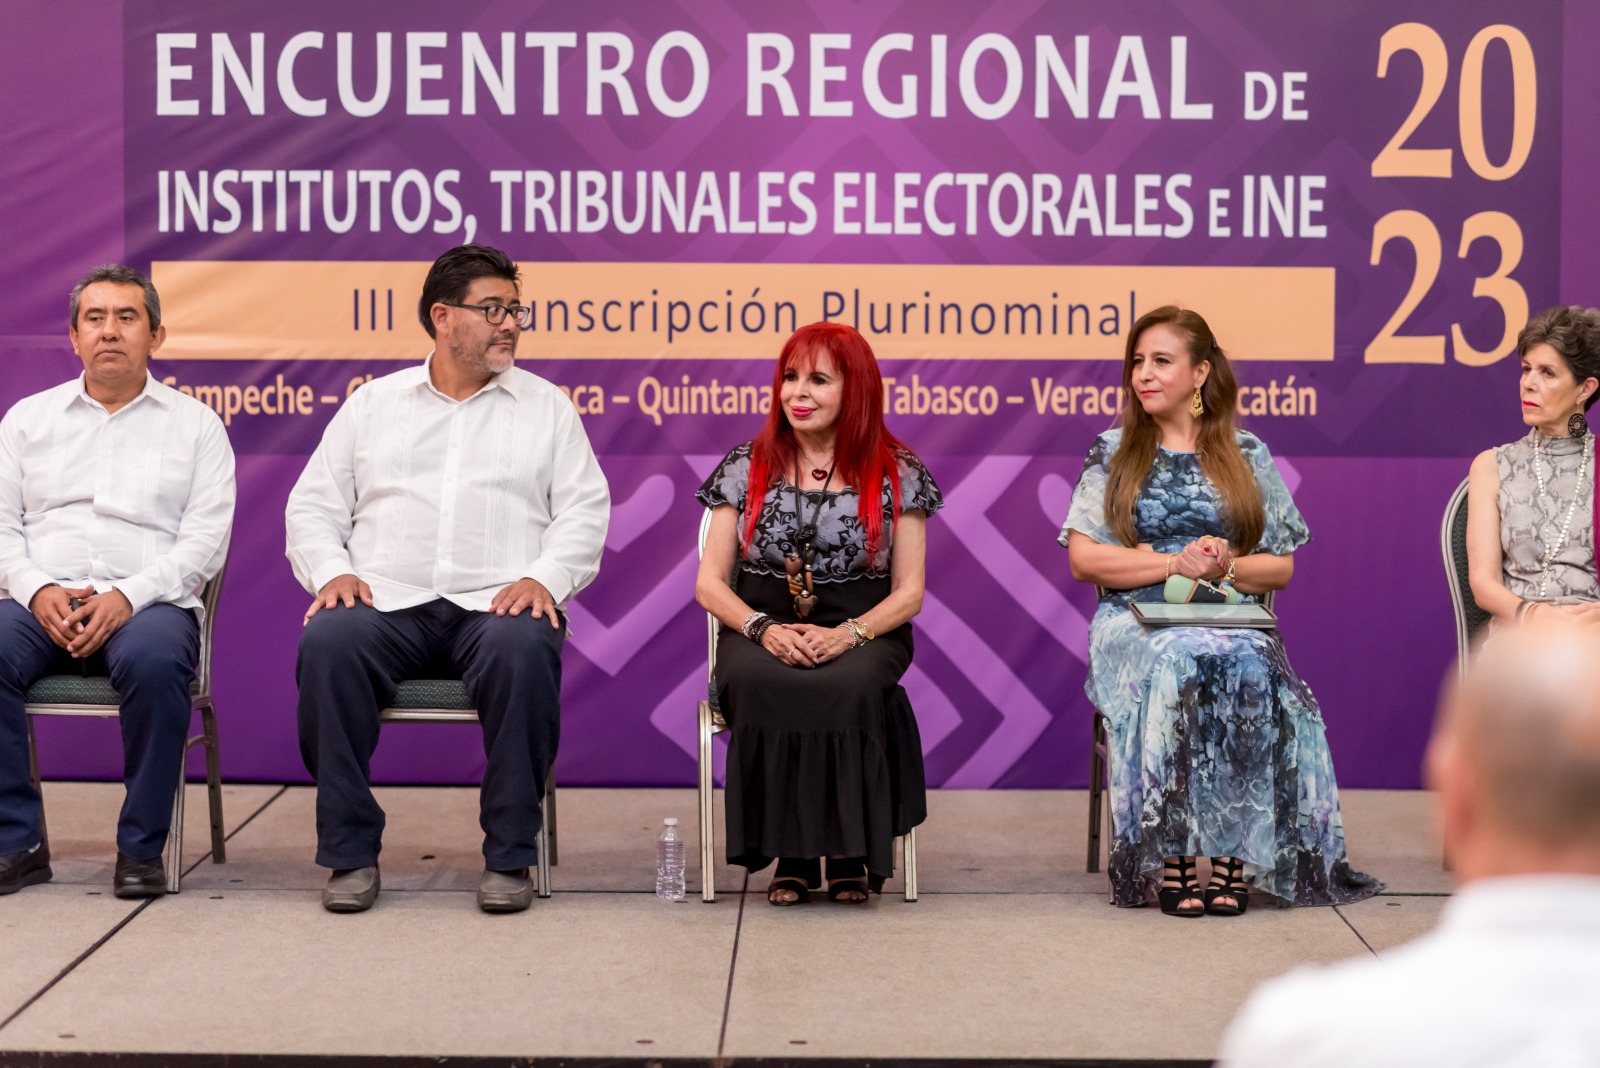 Inaugura Layda Sansores “Encuentro Regional de Institutos, Tribunales Electorales e INE 2023”